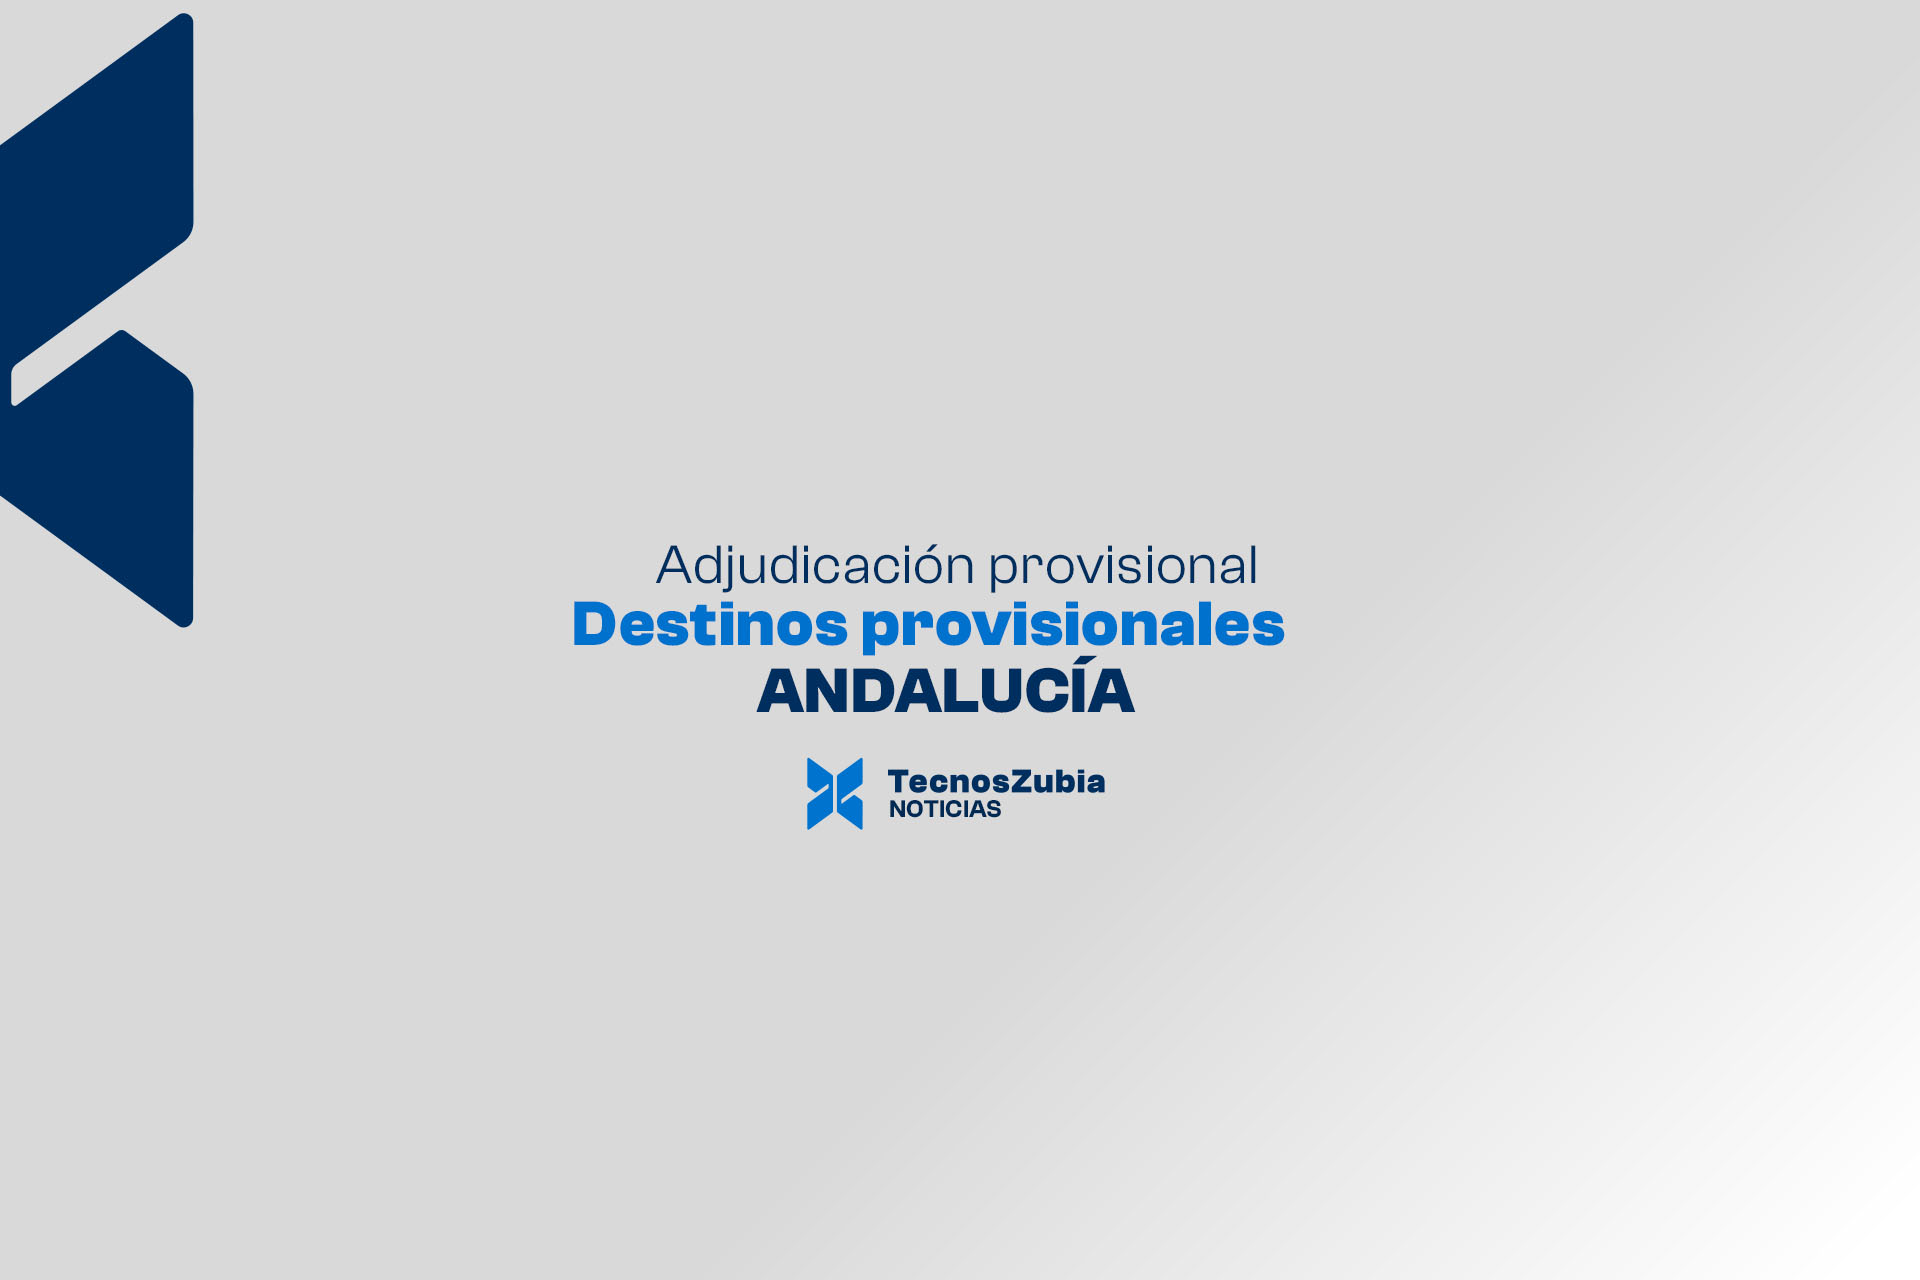 Adjudicación provisional destinos provisionales Andalucía